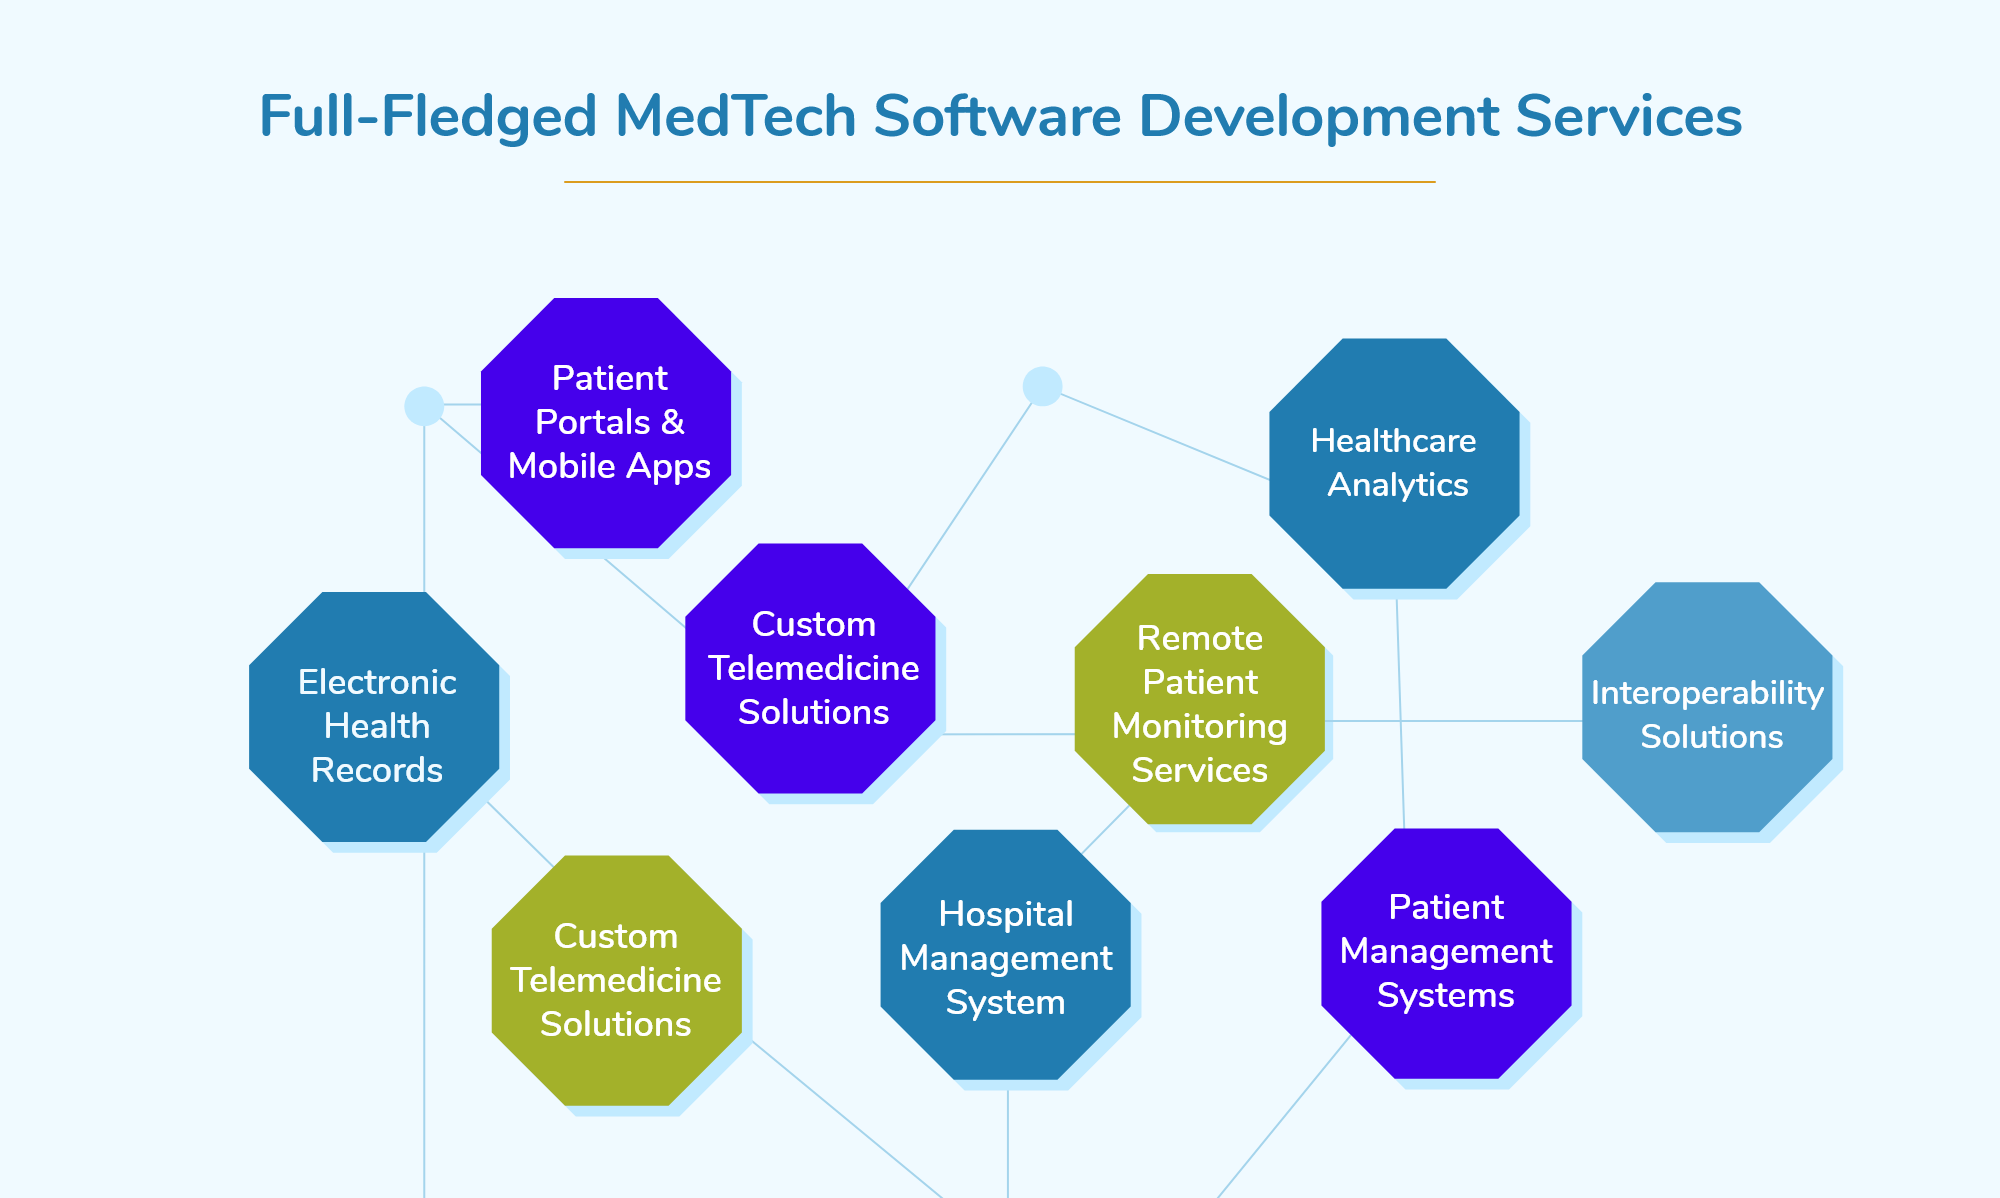 MedTech Software Development Services